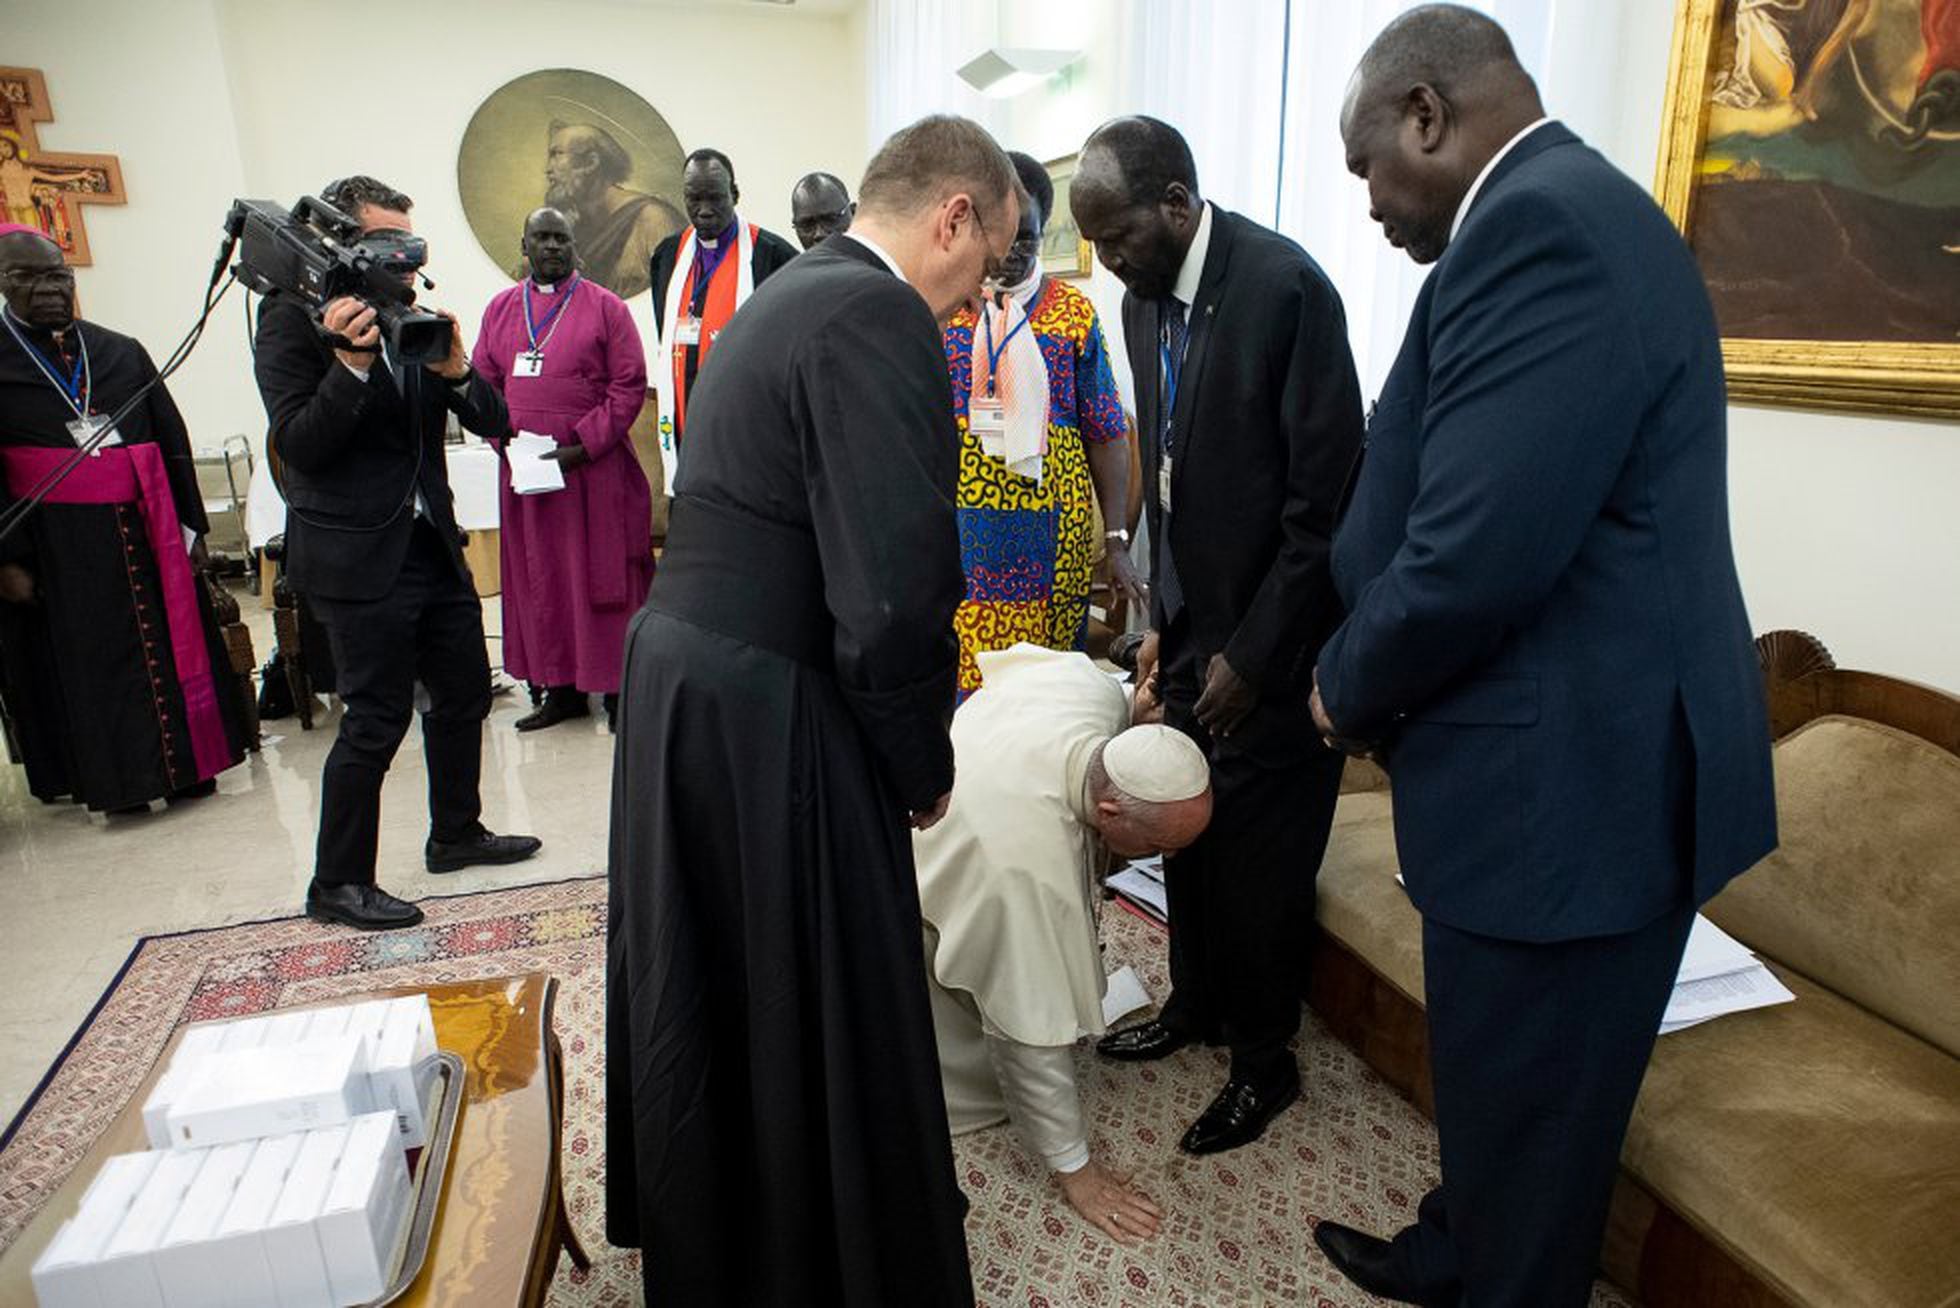 El Papa se arrodilla para besar los pies del presidente de Sudán del Sur, Salva Kiir, en el Vaticano, el jueves 11 de abril de 2019.